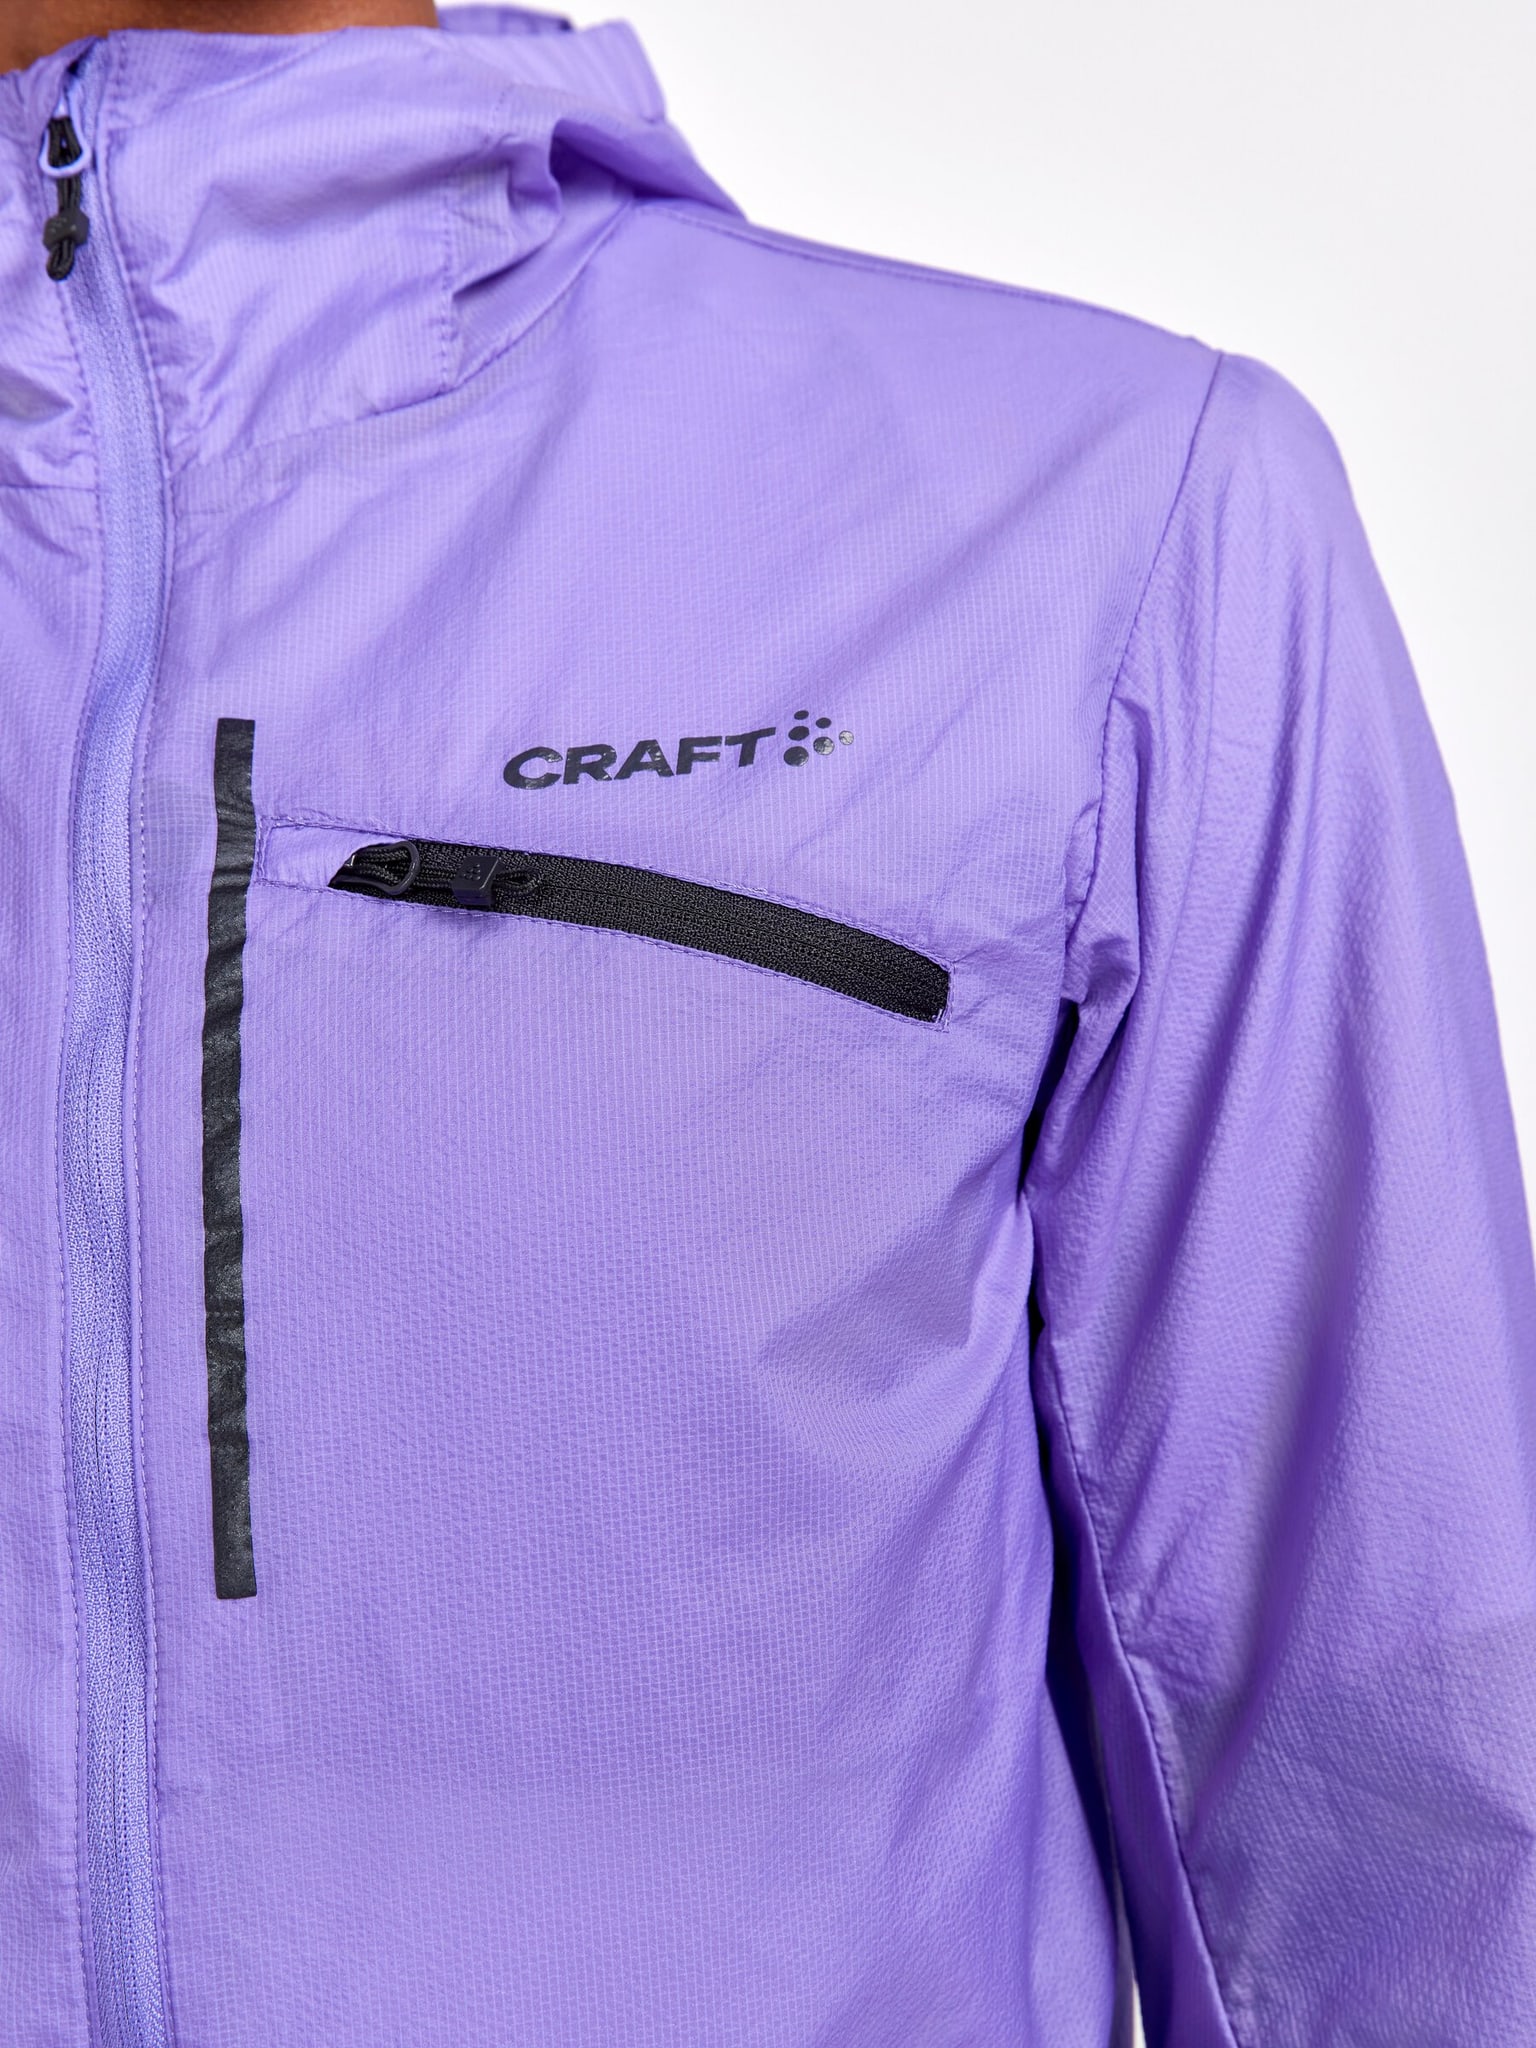 Craft Craft ADV OFFROAD WIND JACKET Bikejacke violett 6